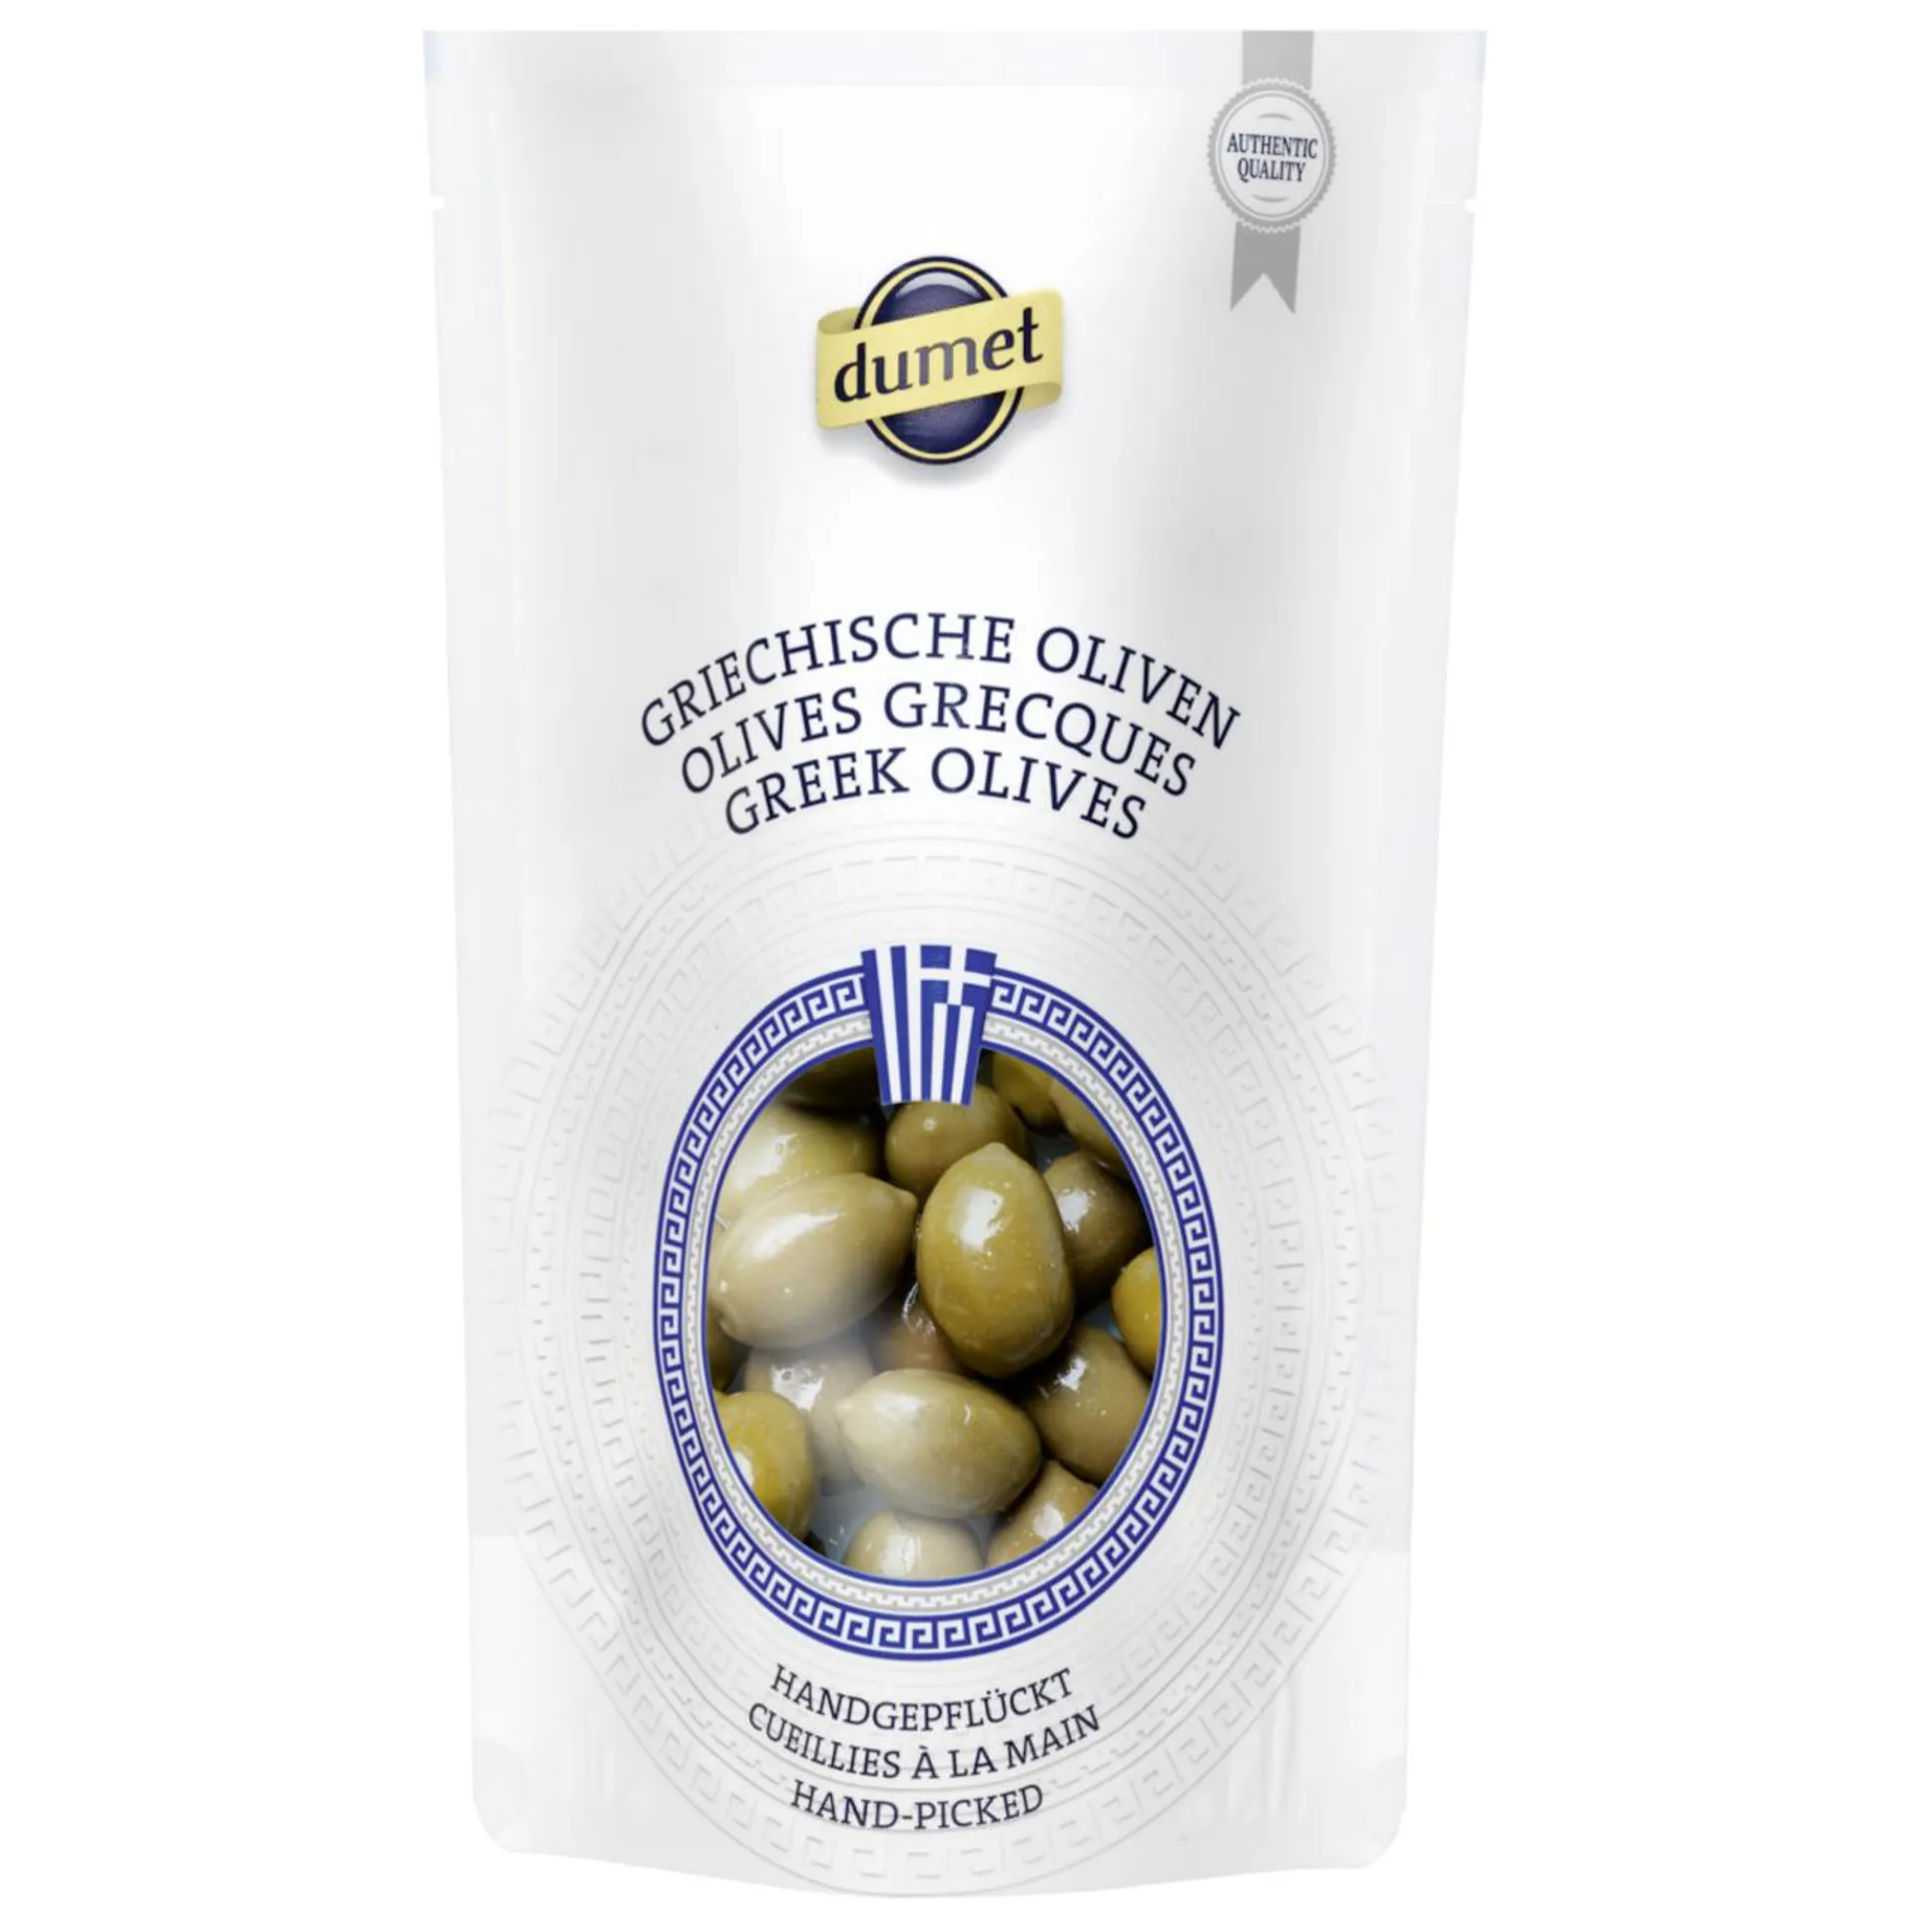 Dumet grüne Oliven mit Stein Chalkidiki